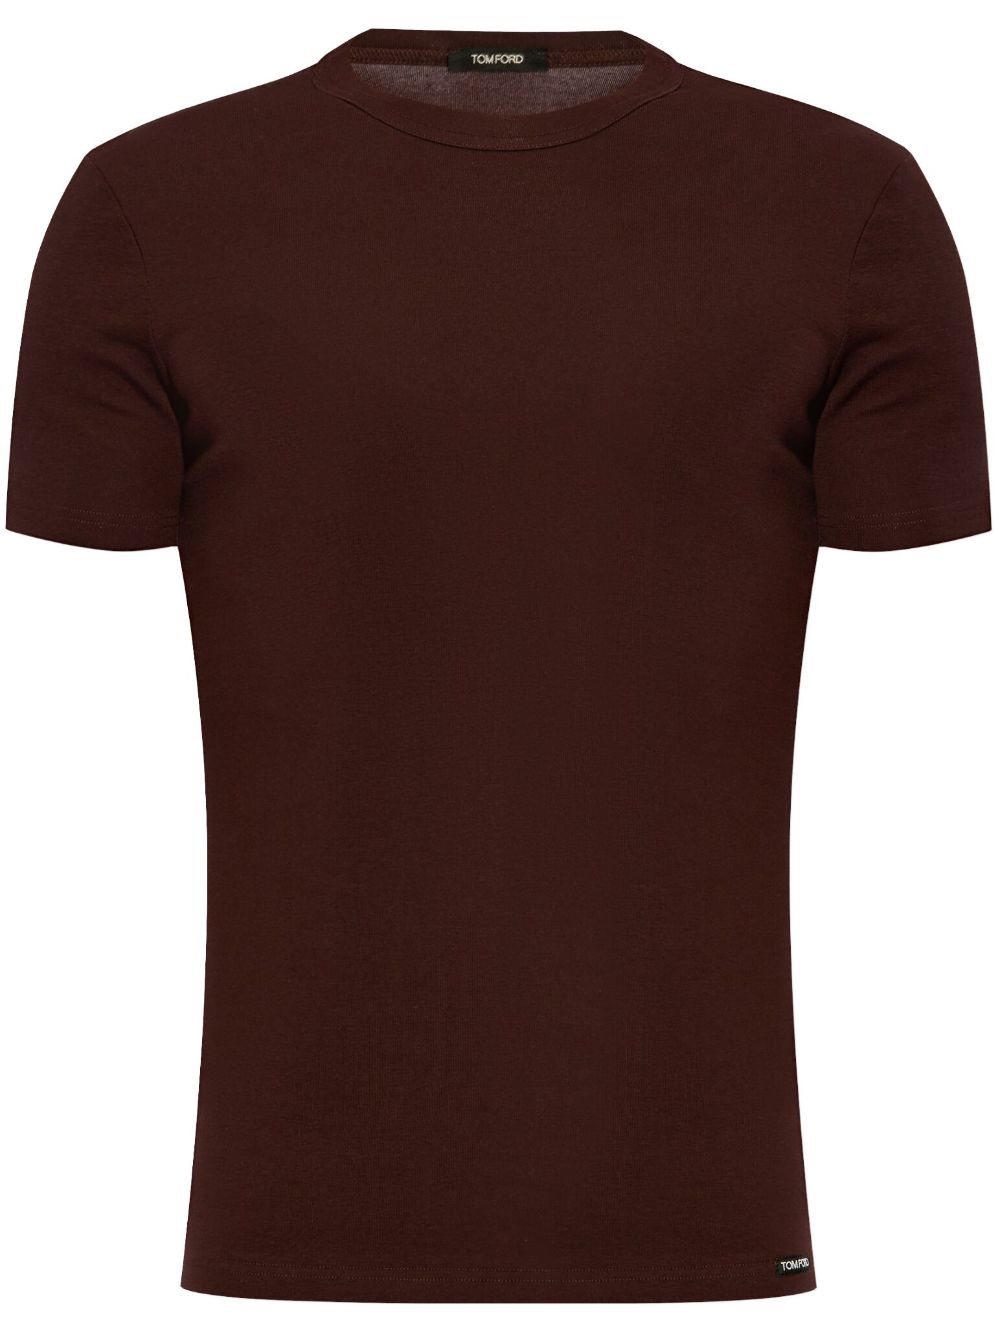 TOM FORD Lounge-T-Shirt mit Rundhalsausschnitt - Rot